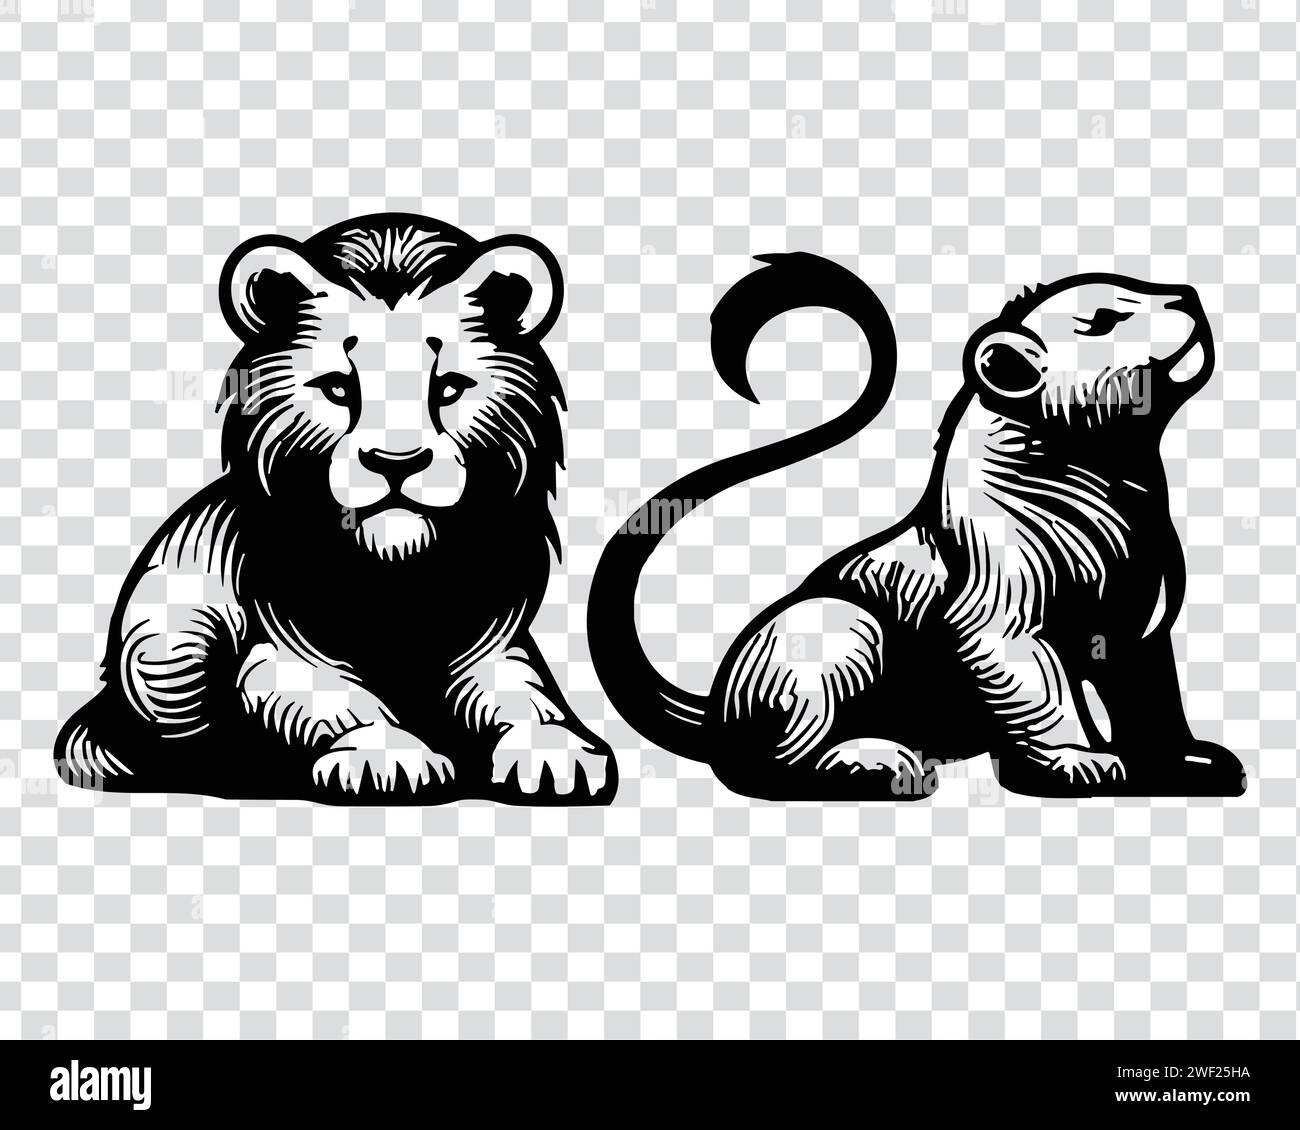 Lion Vector Lion Head And Lion Body Portrait Illustration Unique Design Lion Vector Icons 2775